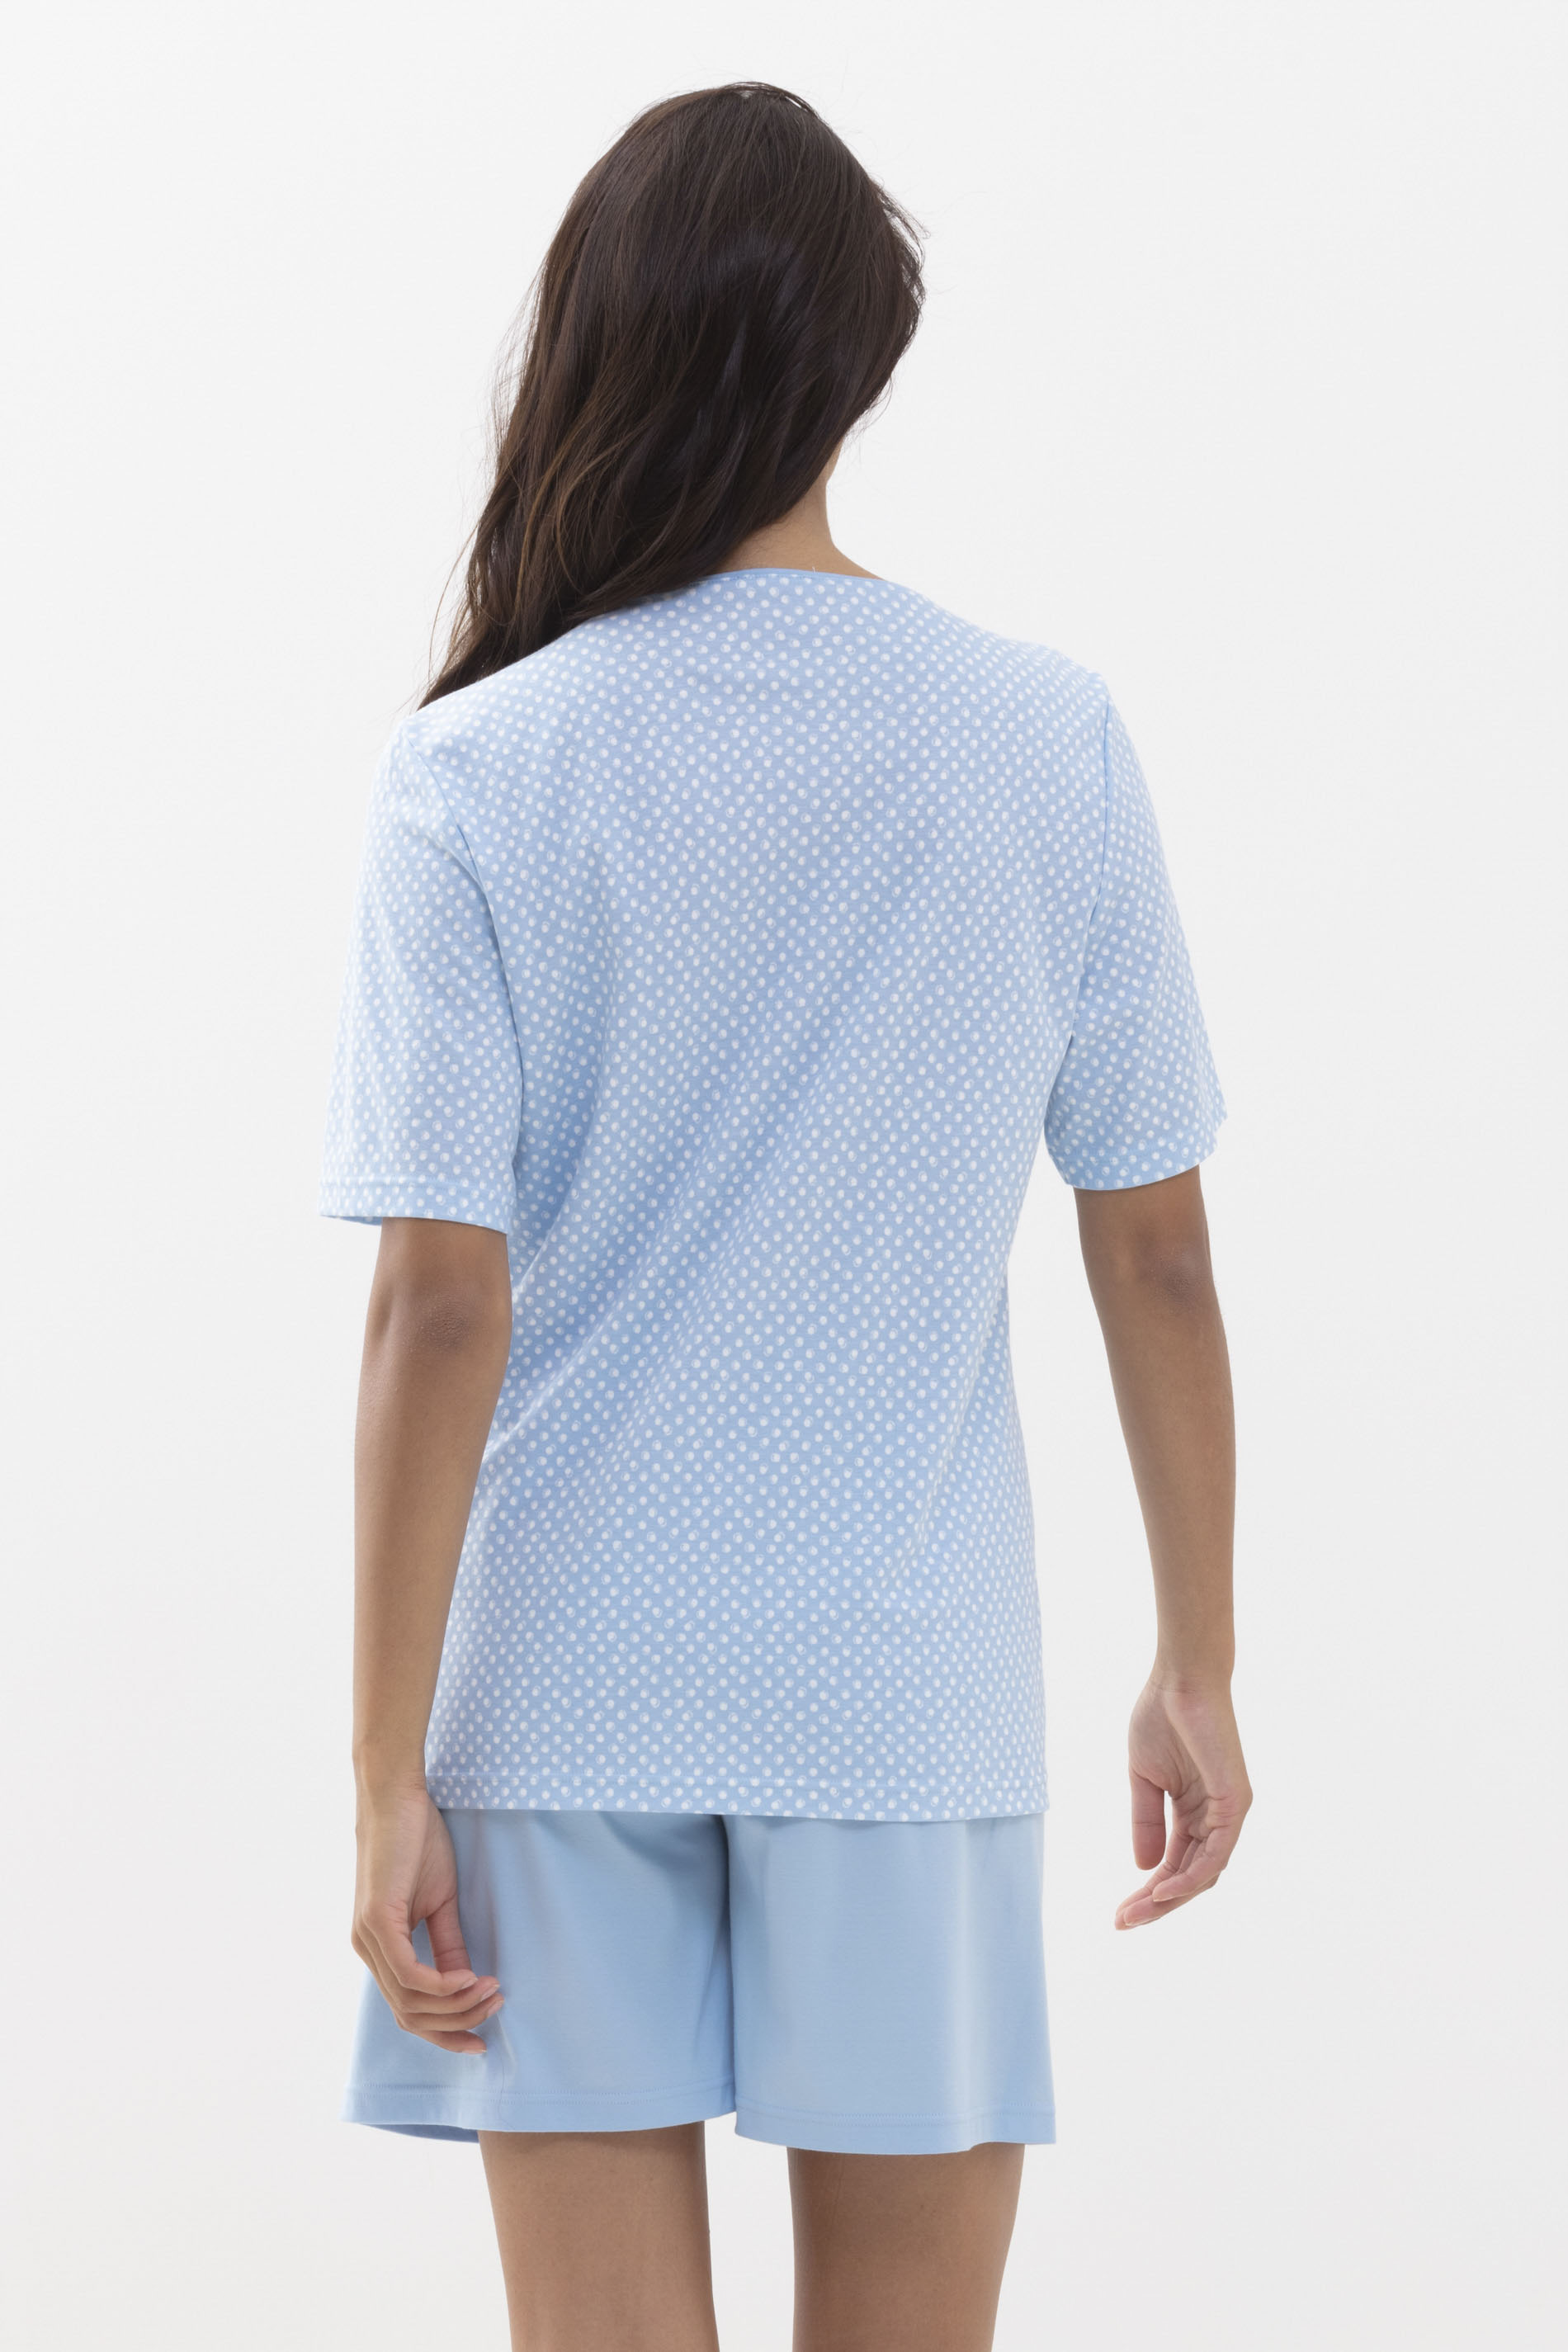 Schlafanzug kurz Dream Blue Serie Emelie Rückansicht | mey®